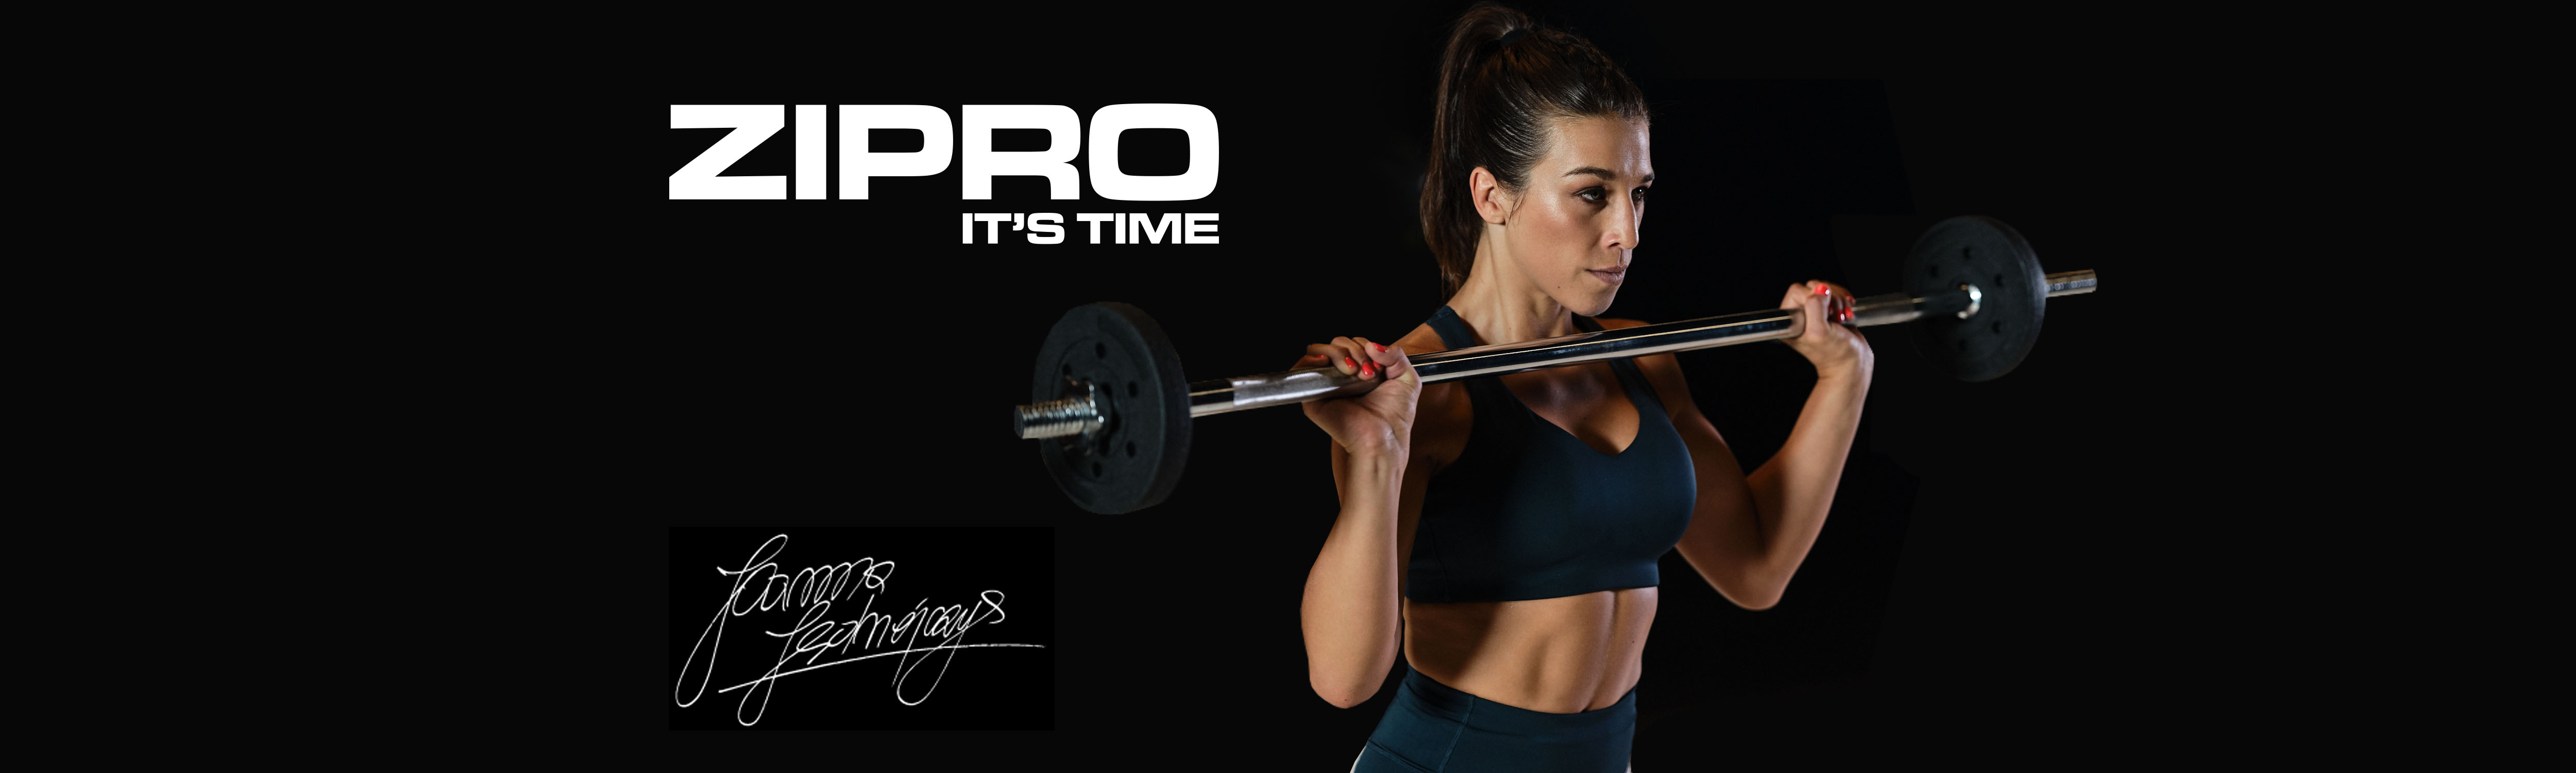 Zipro strength training